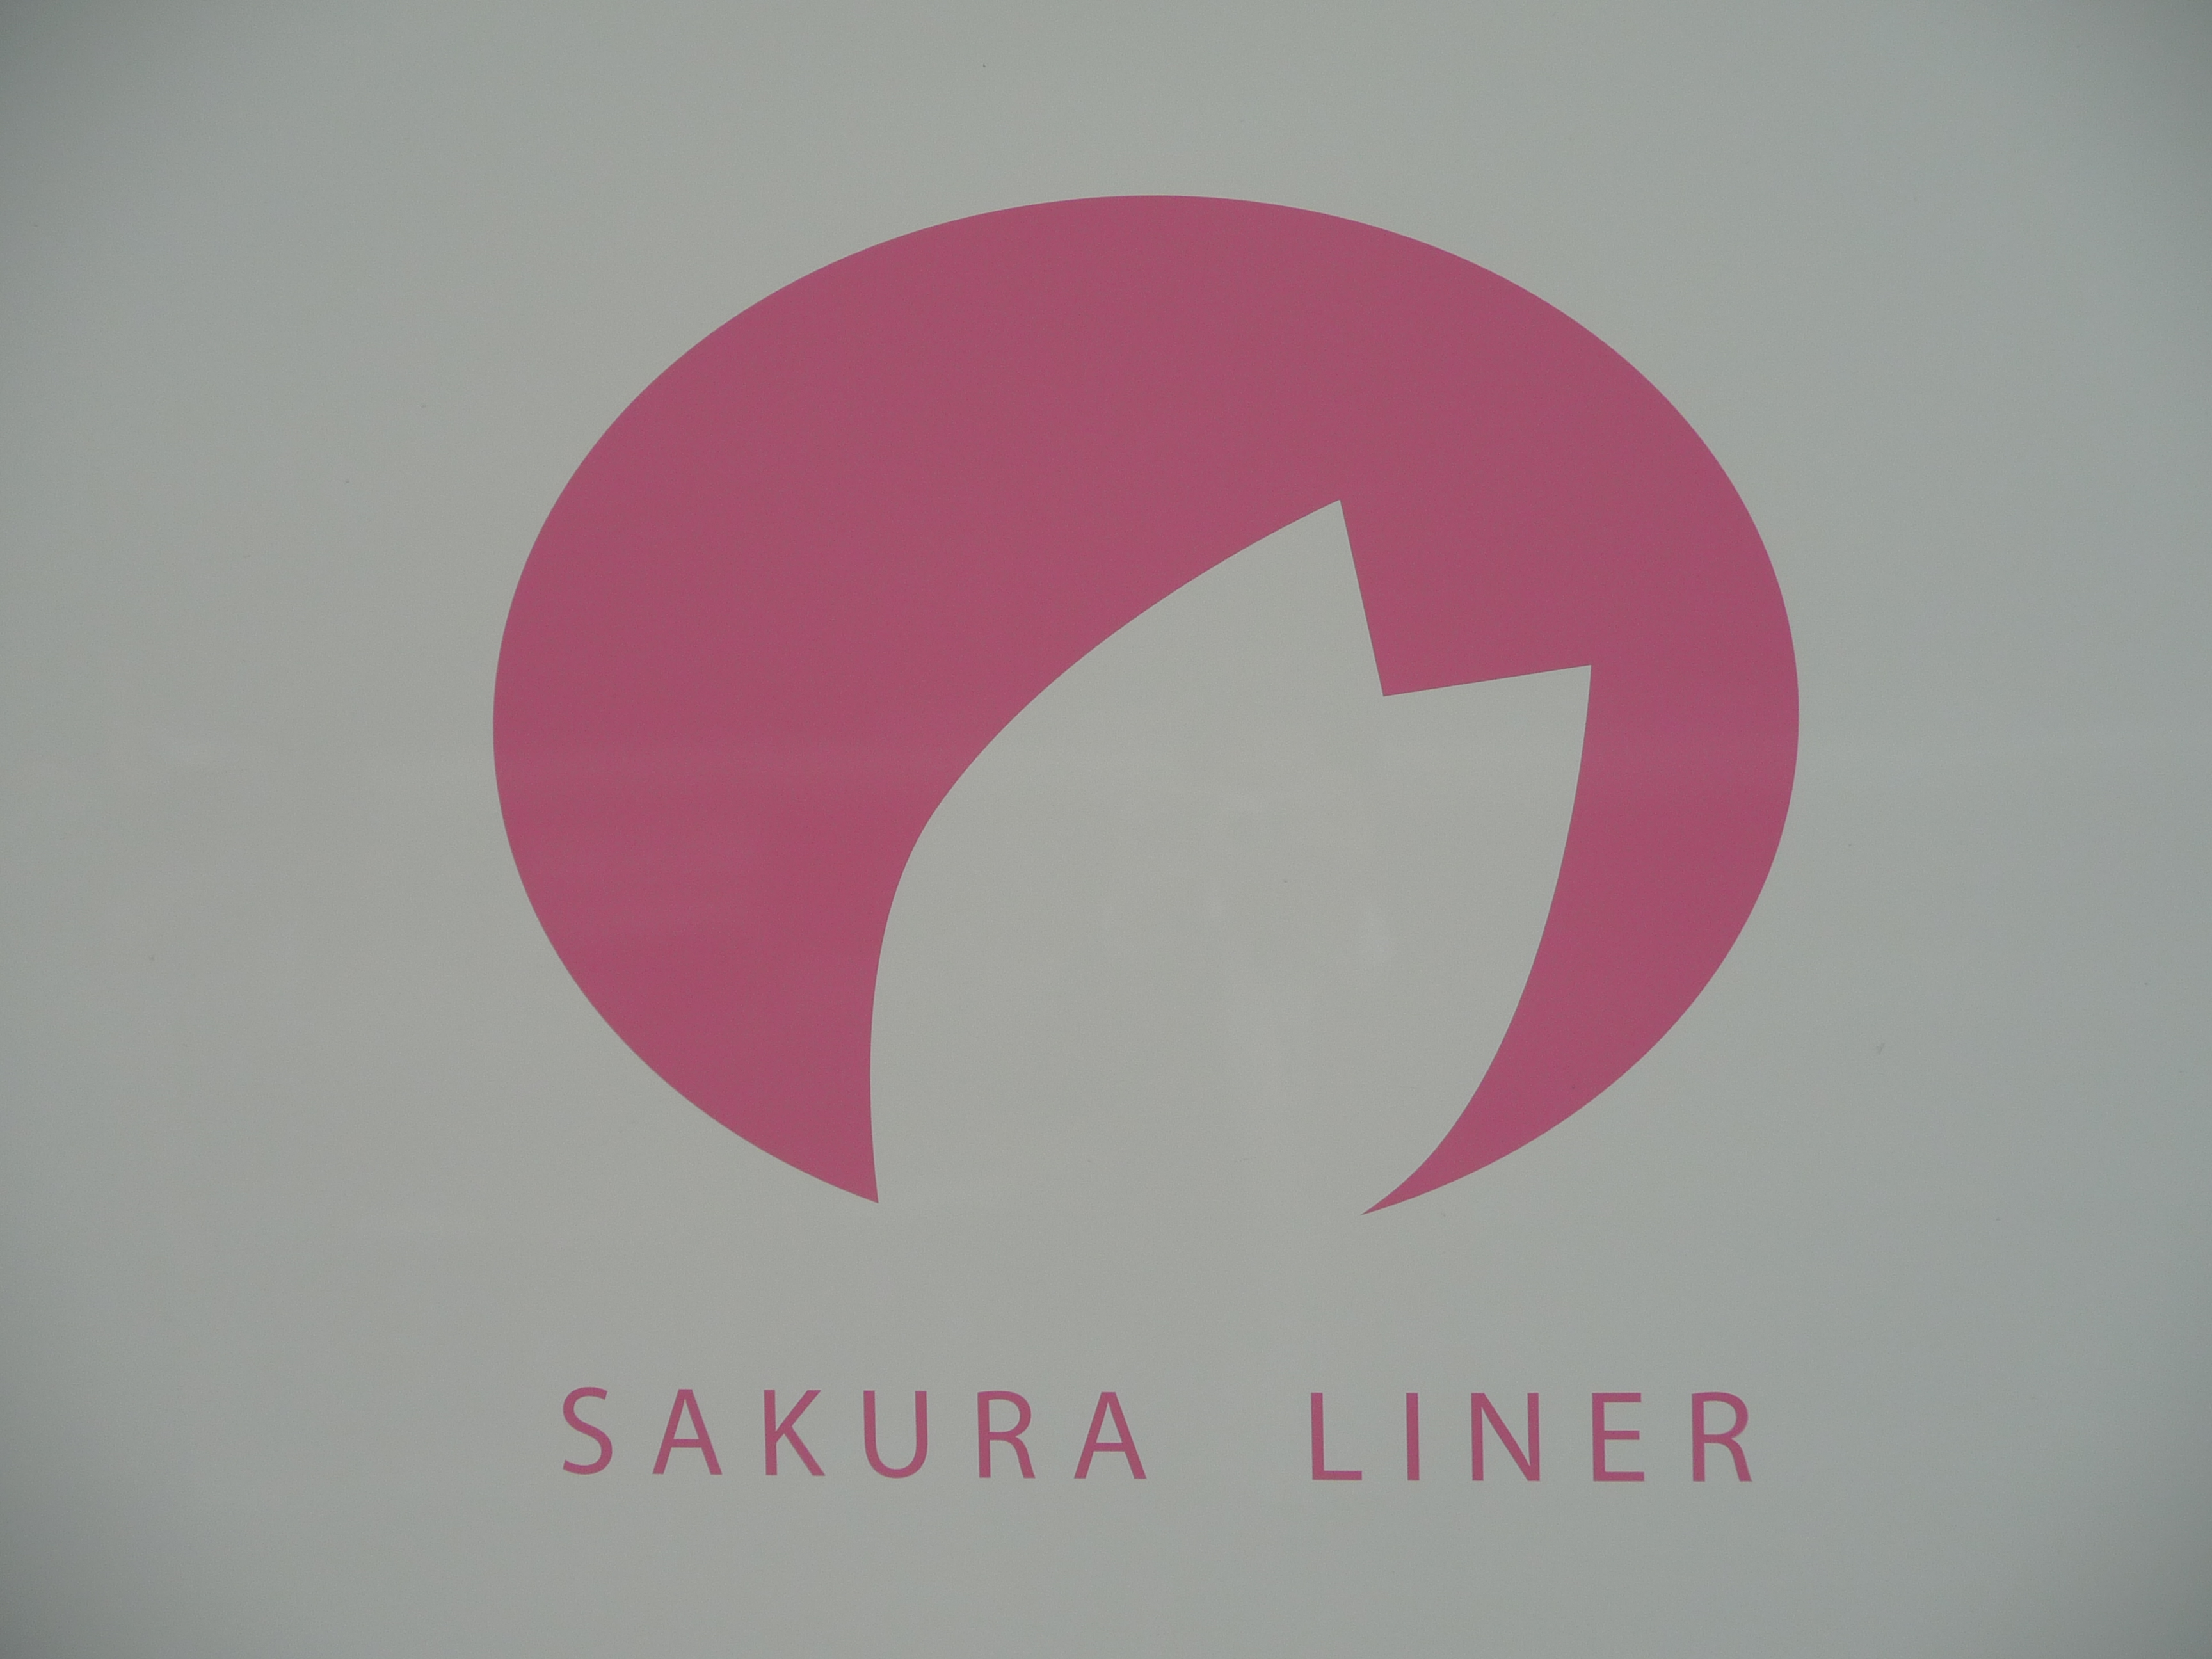 File:Logo of sakura liner.JPG - Commons